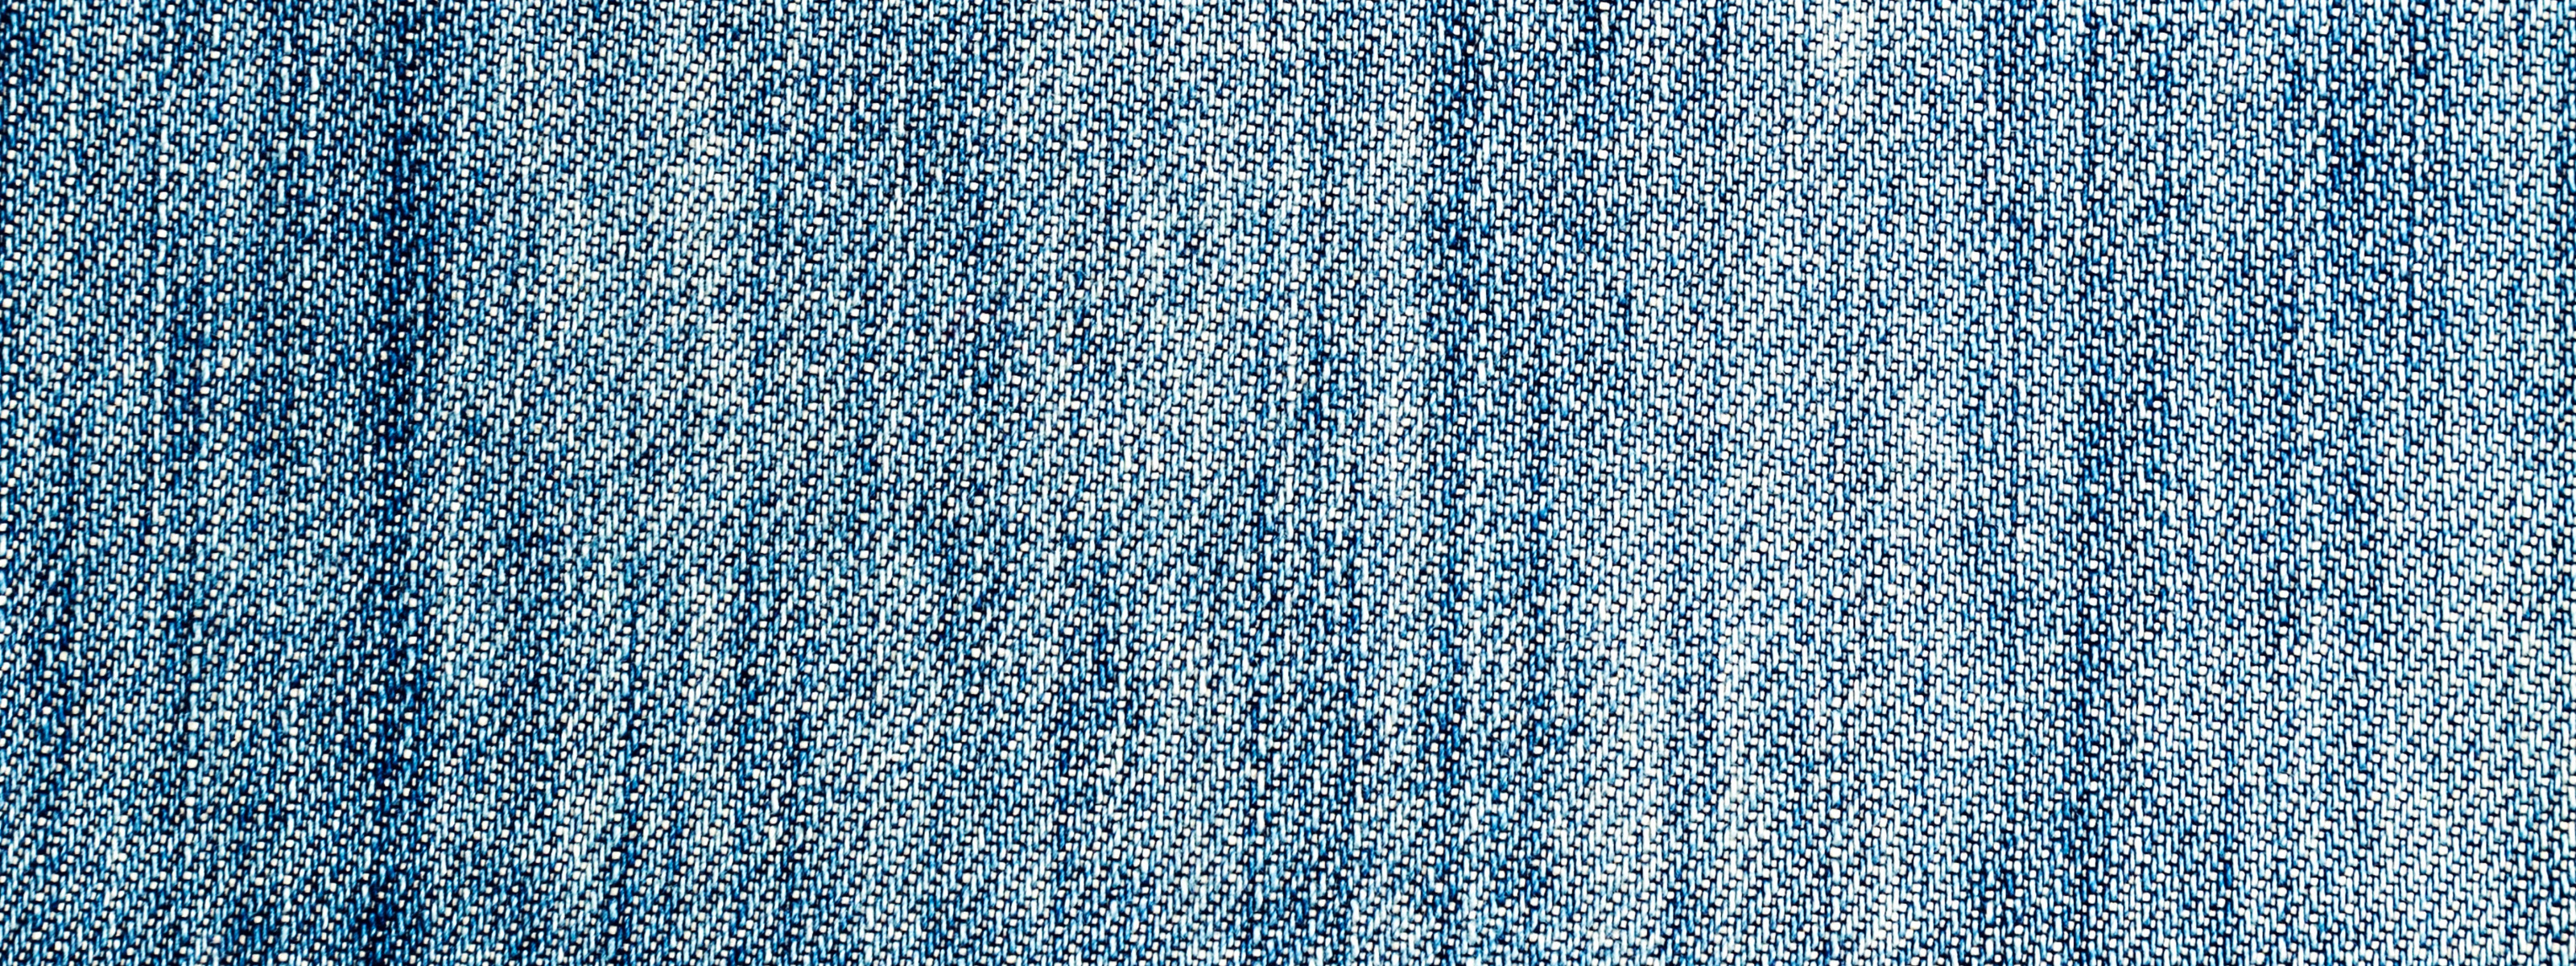 Джинсовый принт. Фактура джинсовой ткани. Джинсовая ткань. Текстура джинсовой ткани. Джинсовая ткань фон.